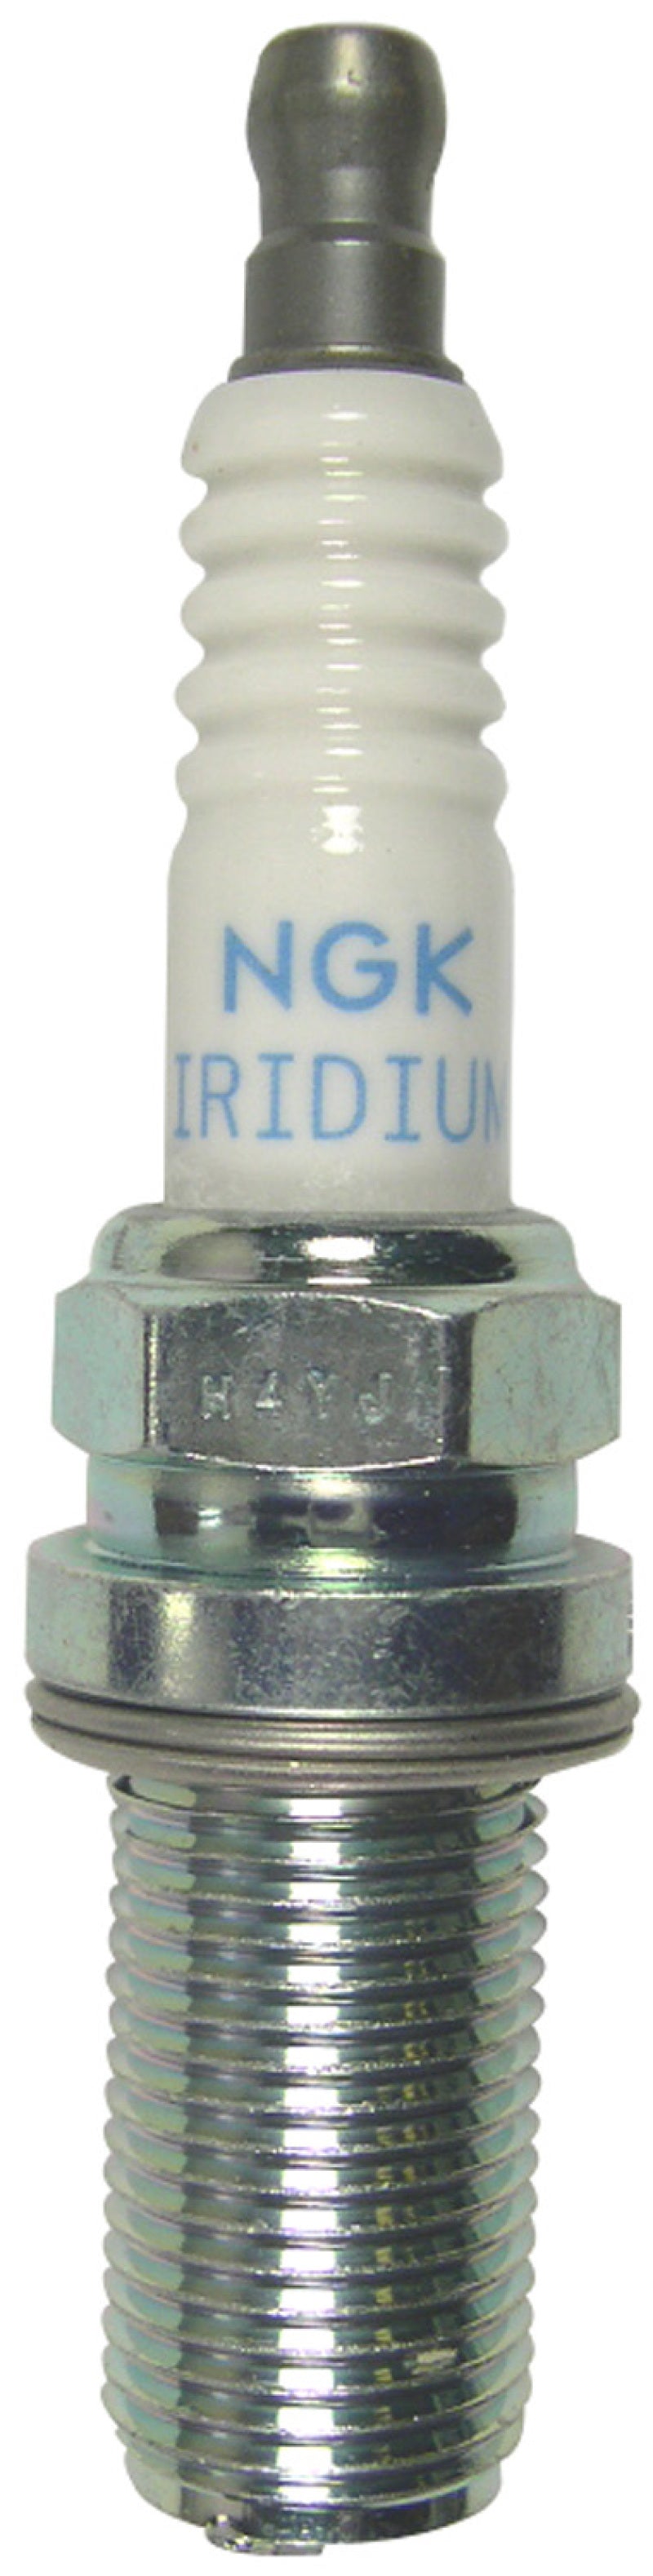 NGK Racing Spark Plug Box of 4 (R7438-9).